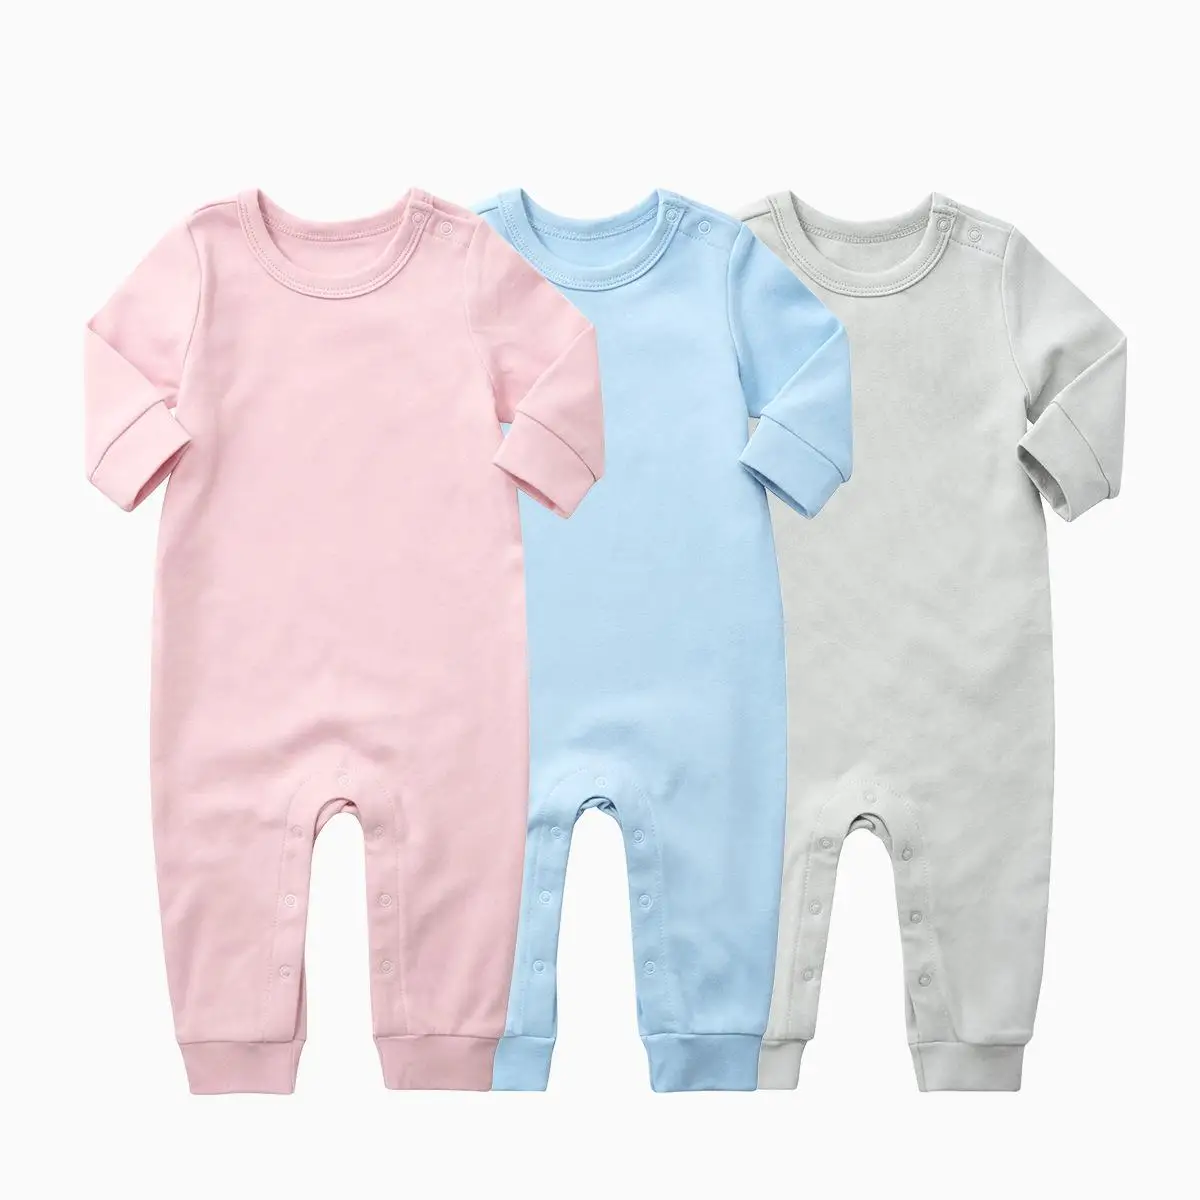 Orangemom 2018 babytøj af høj kvalitet, økologisk Bomuld-Romper Buksedragt med Lange Ærmer i bomuld baby pige tøj til nyfødte 2